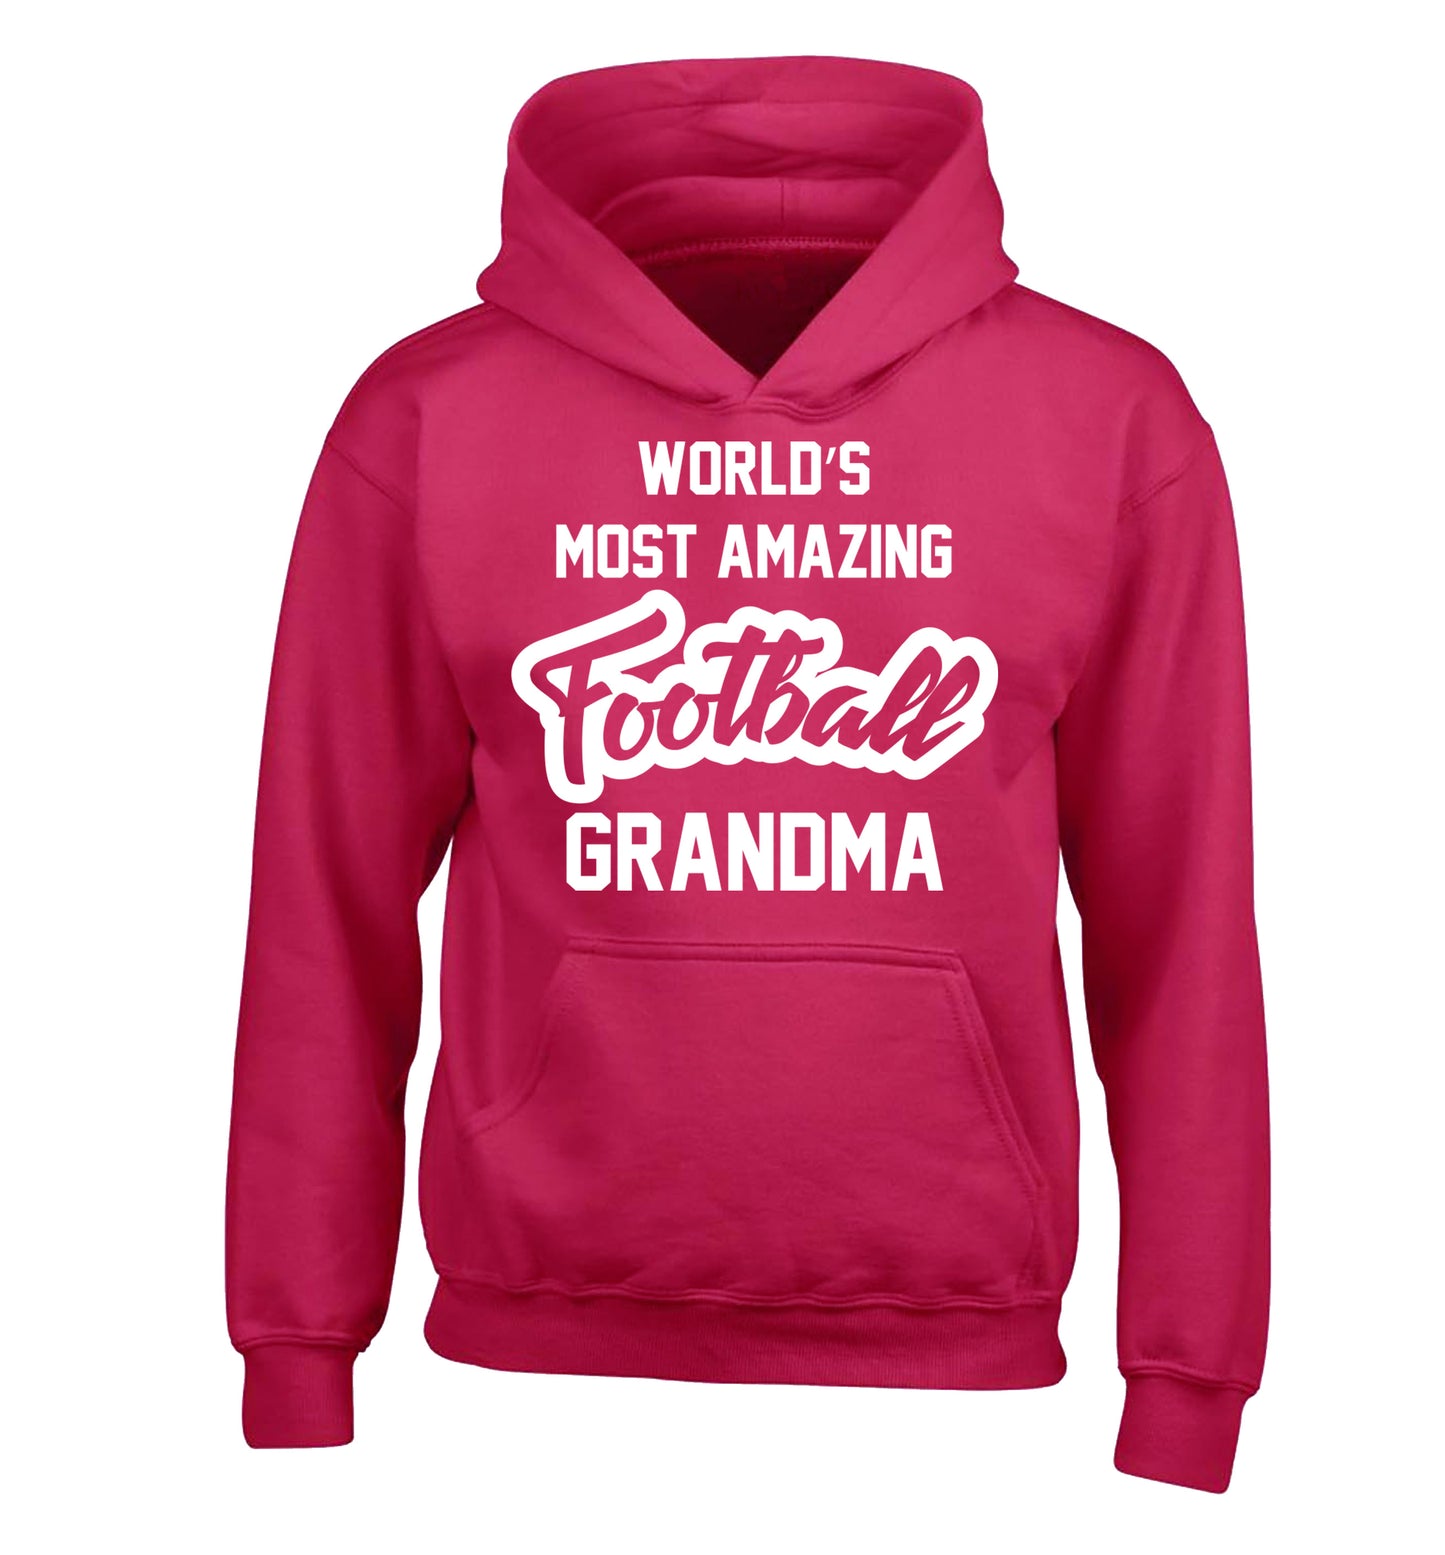 Worlds most amazing football grandma children's pink hoodie 12-14 Years